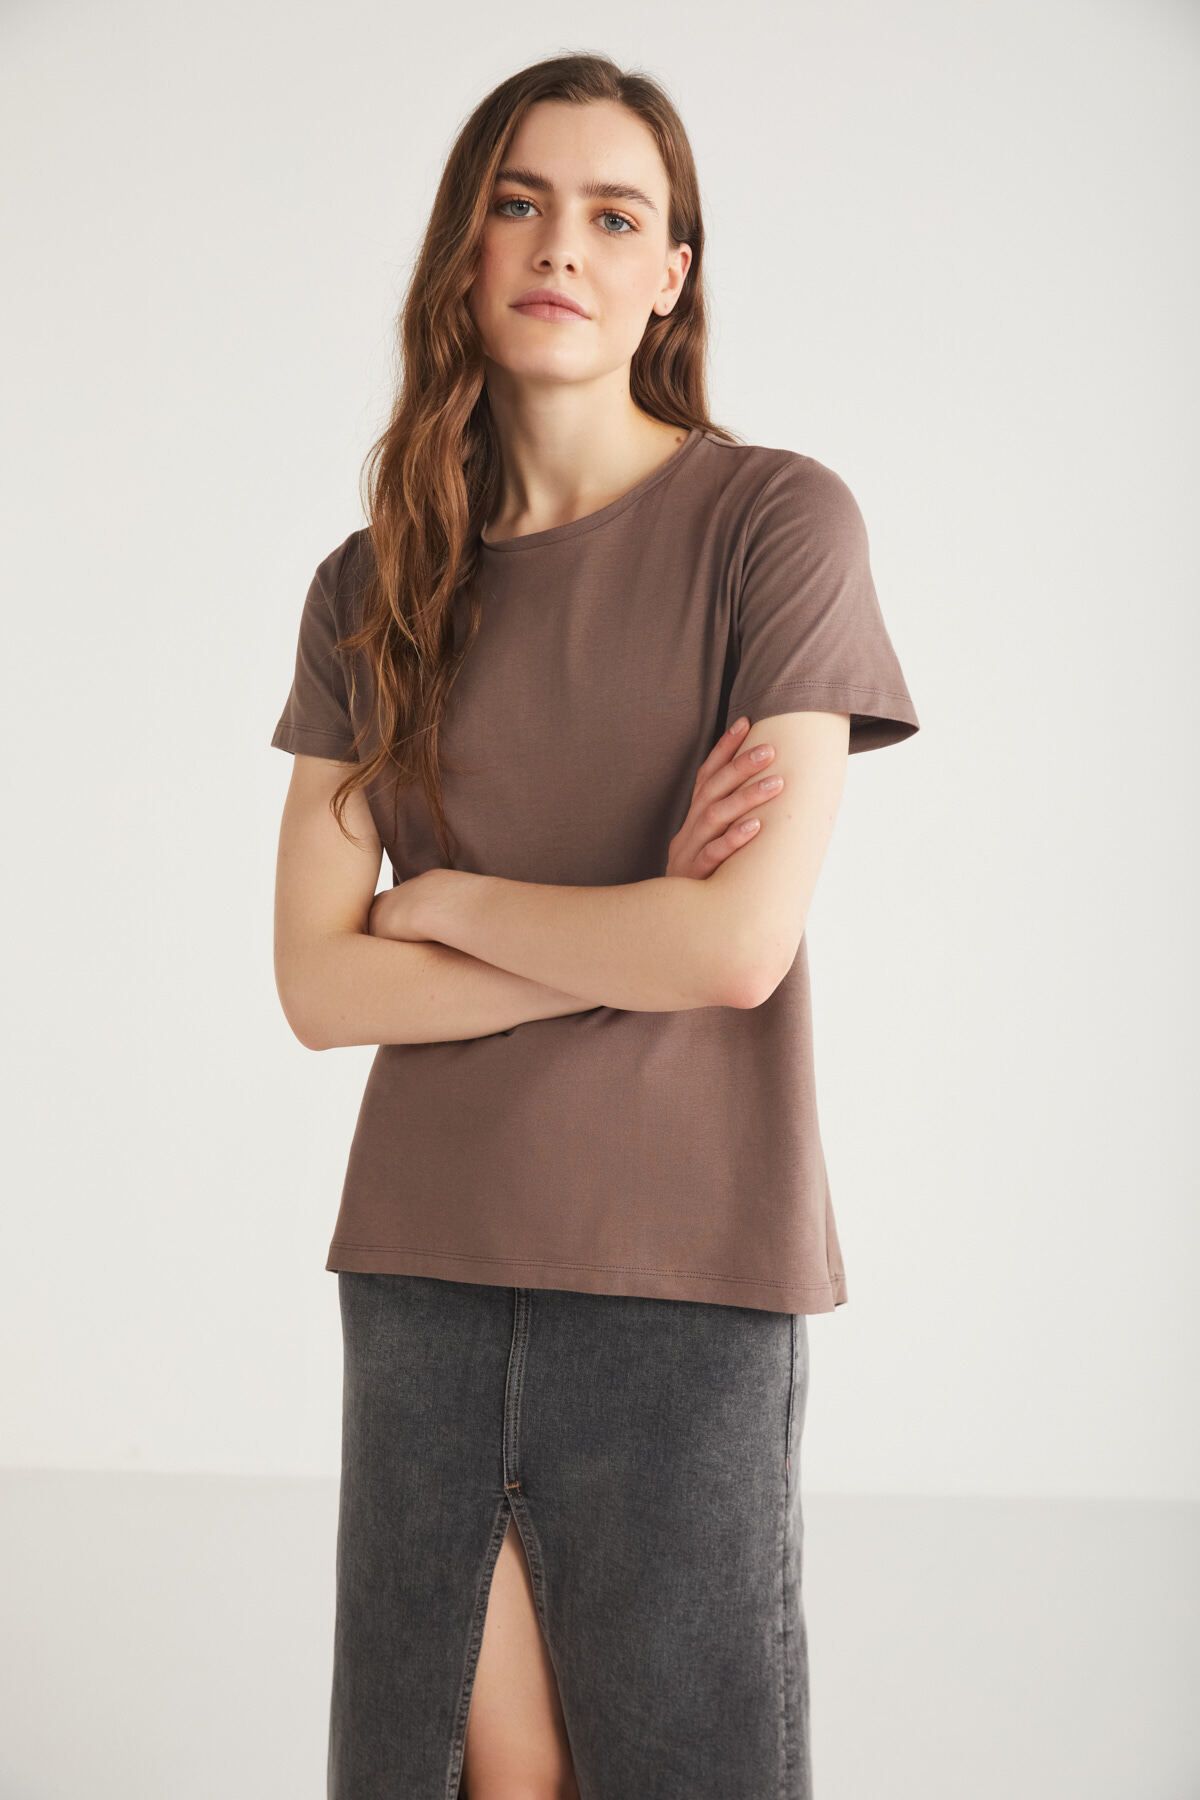 ETHIQUET Tatum Kadın 100% Pamuk Süprem Yuvarlak Yaka Comfort Fit Kahverengi T-shirt